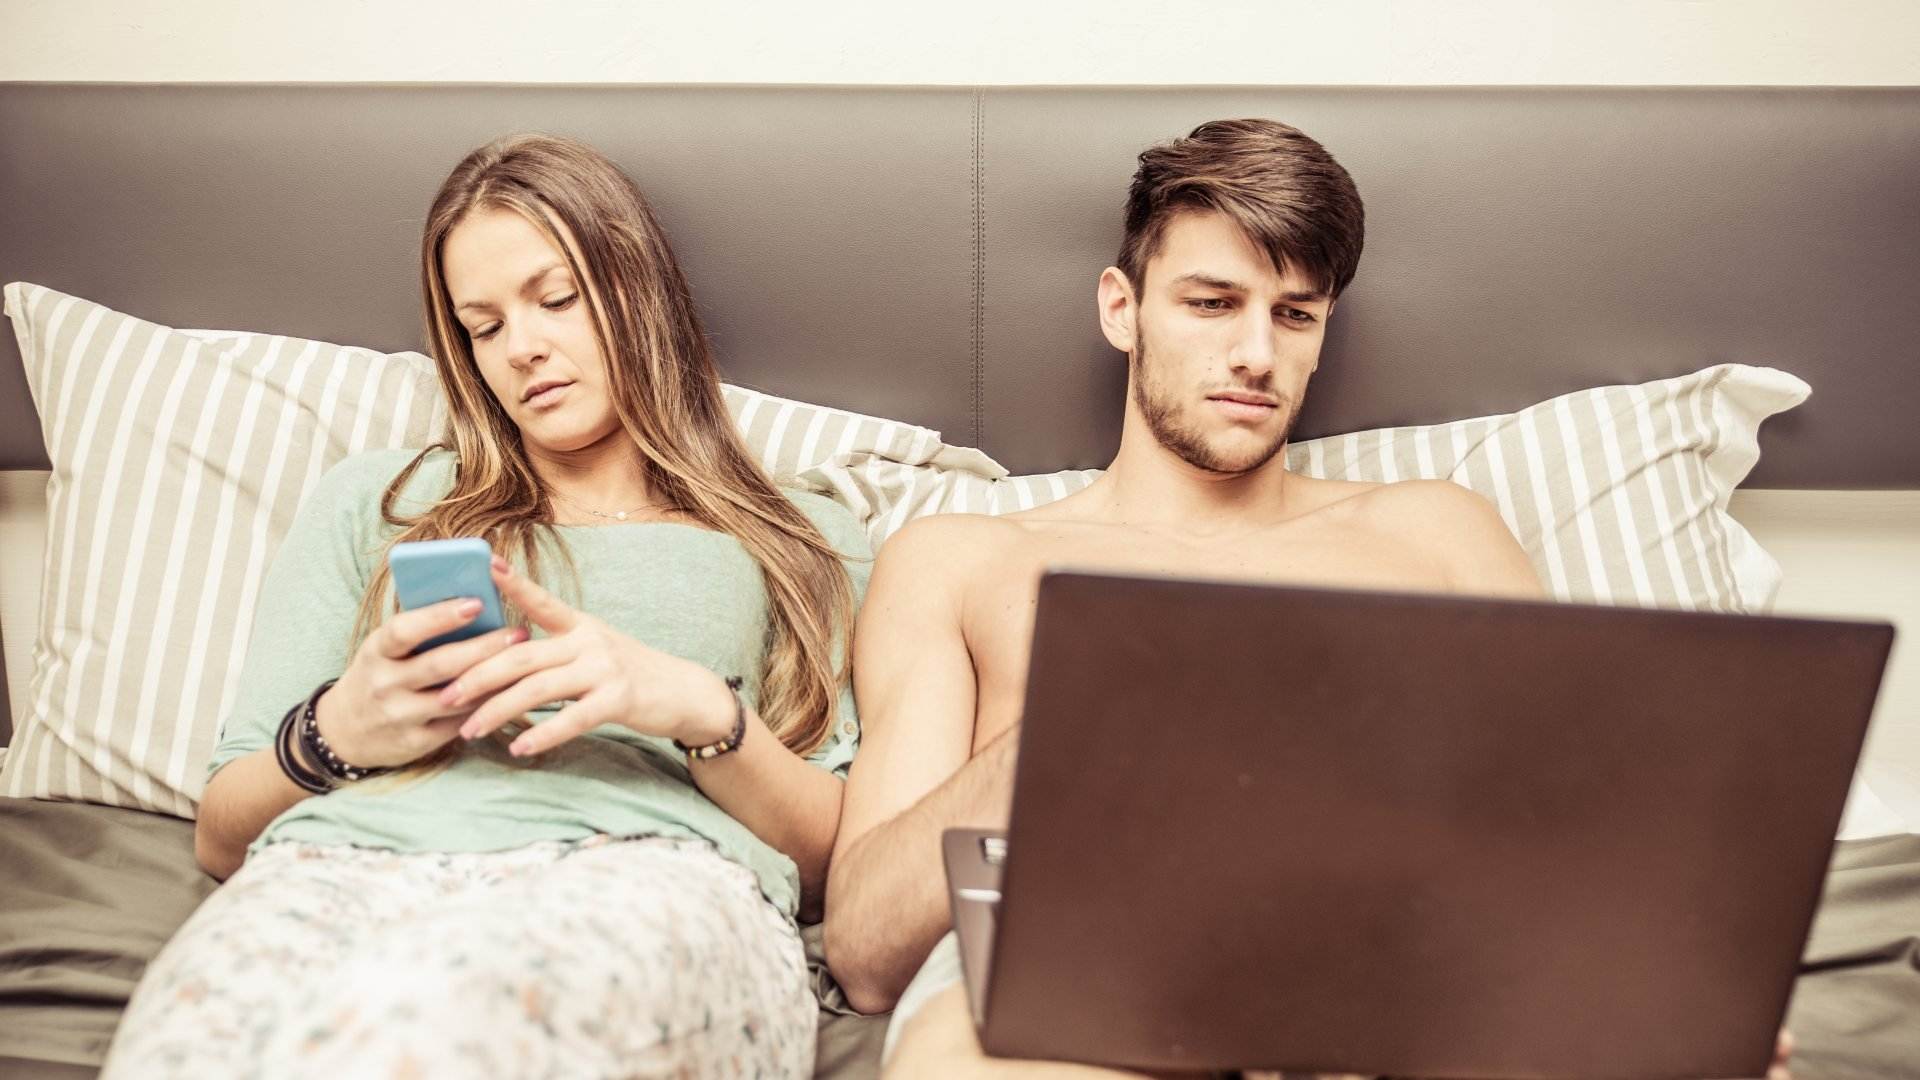 Casi la mitad de los usuarios de teléfonos móviles con entre 25 y 35 años almacena contenido de tipo sexual